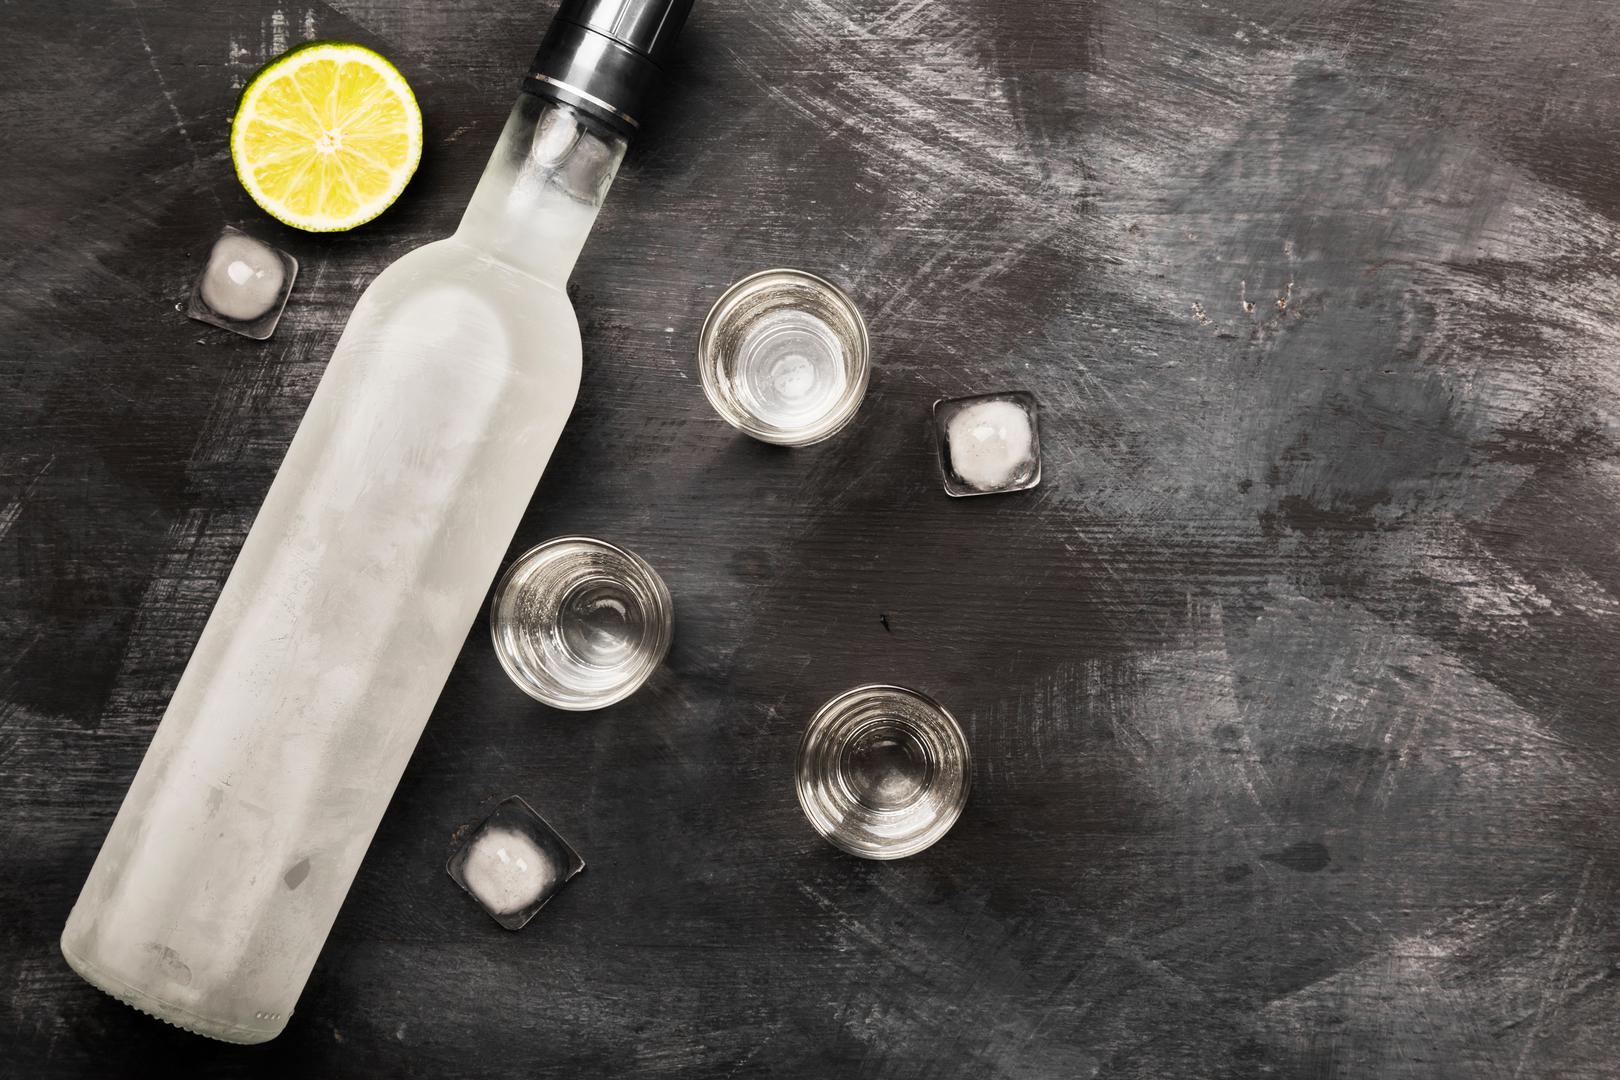 Ovo bi vas moglo iznenaditi, ali votka se ne mora koristiti samo za piće. Ona zapravo ima brojne koristi za kućanstvo, ali i za vas. Naime, ona može koristiti za čišćenje, kuhanje i još mnogo toga, piše Reader's Digest.